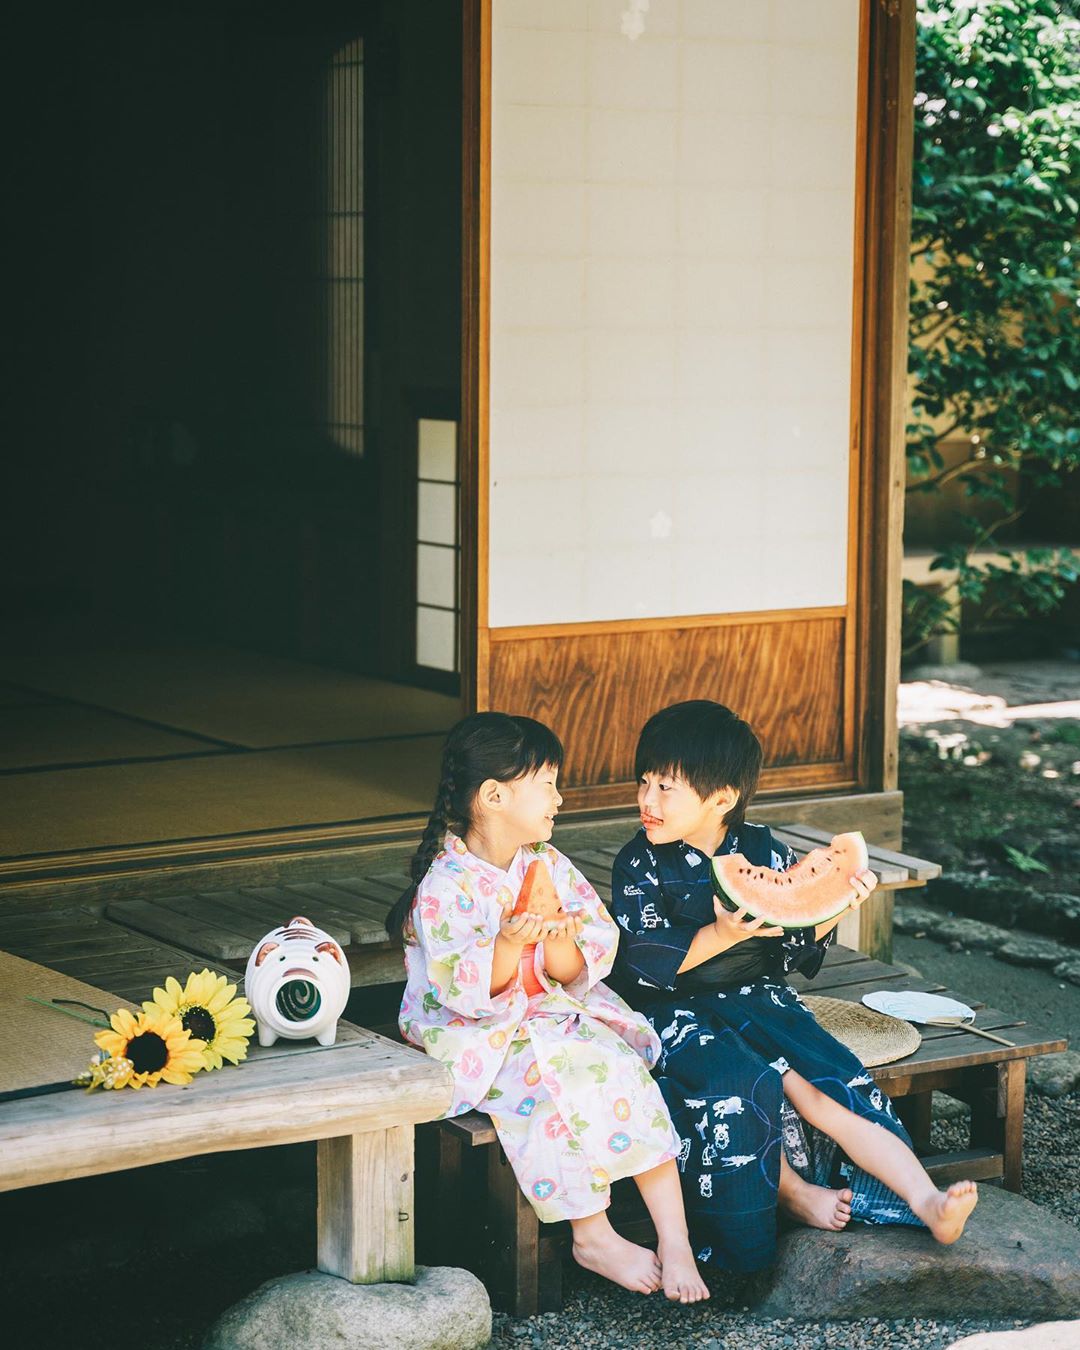 留住最純粹的一刻 日本媽紀錄 兄妹可愛日常 美成童話網盛讚 這才是童年 Pagecup